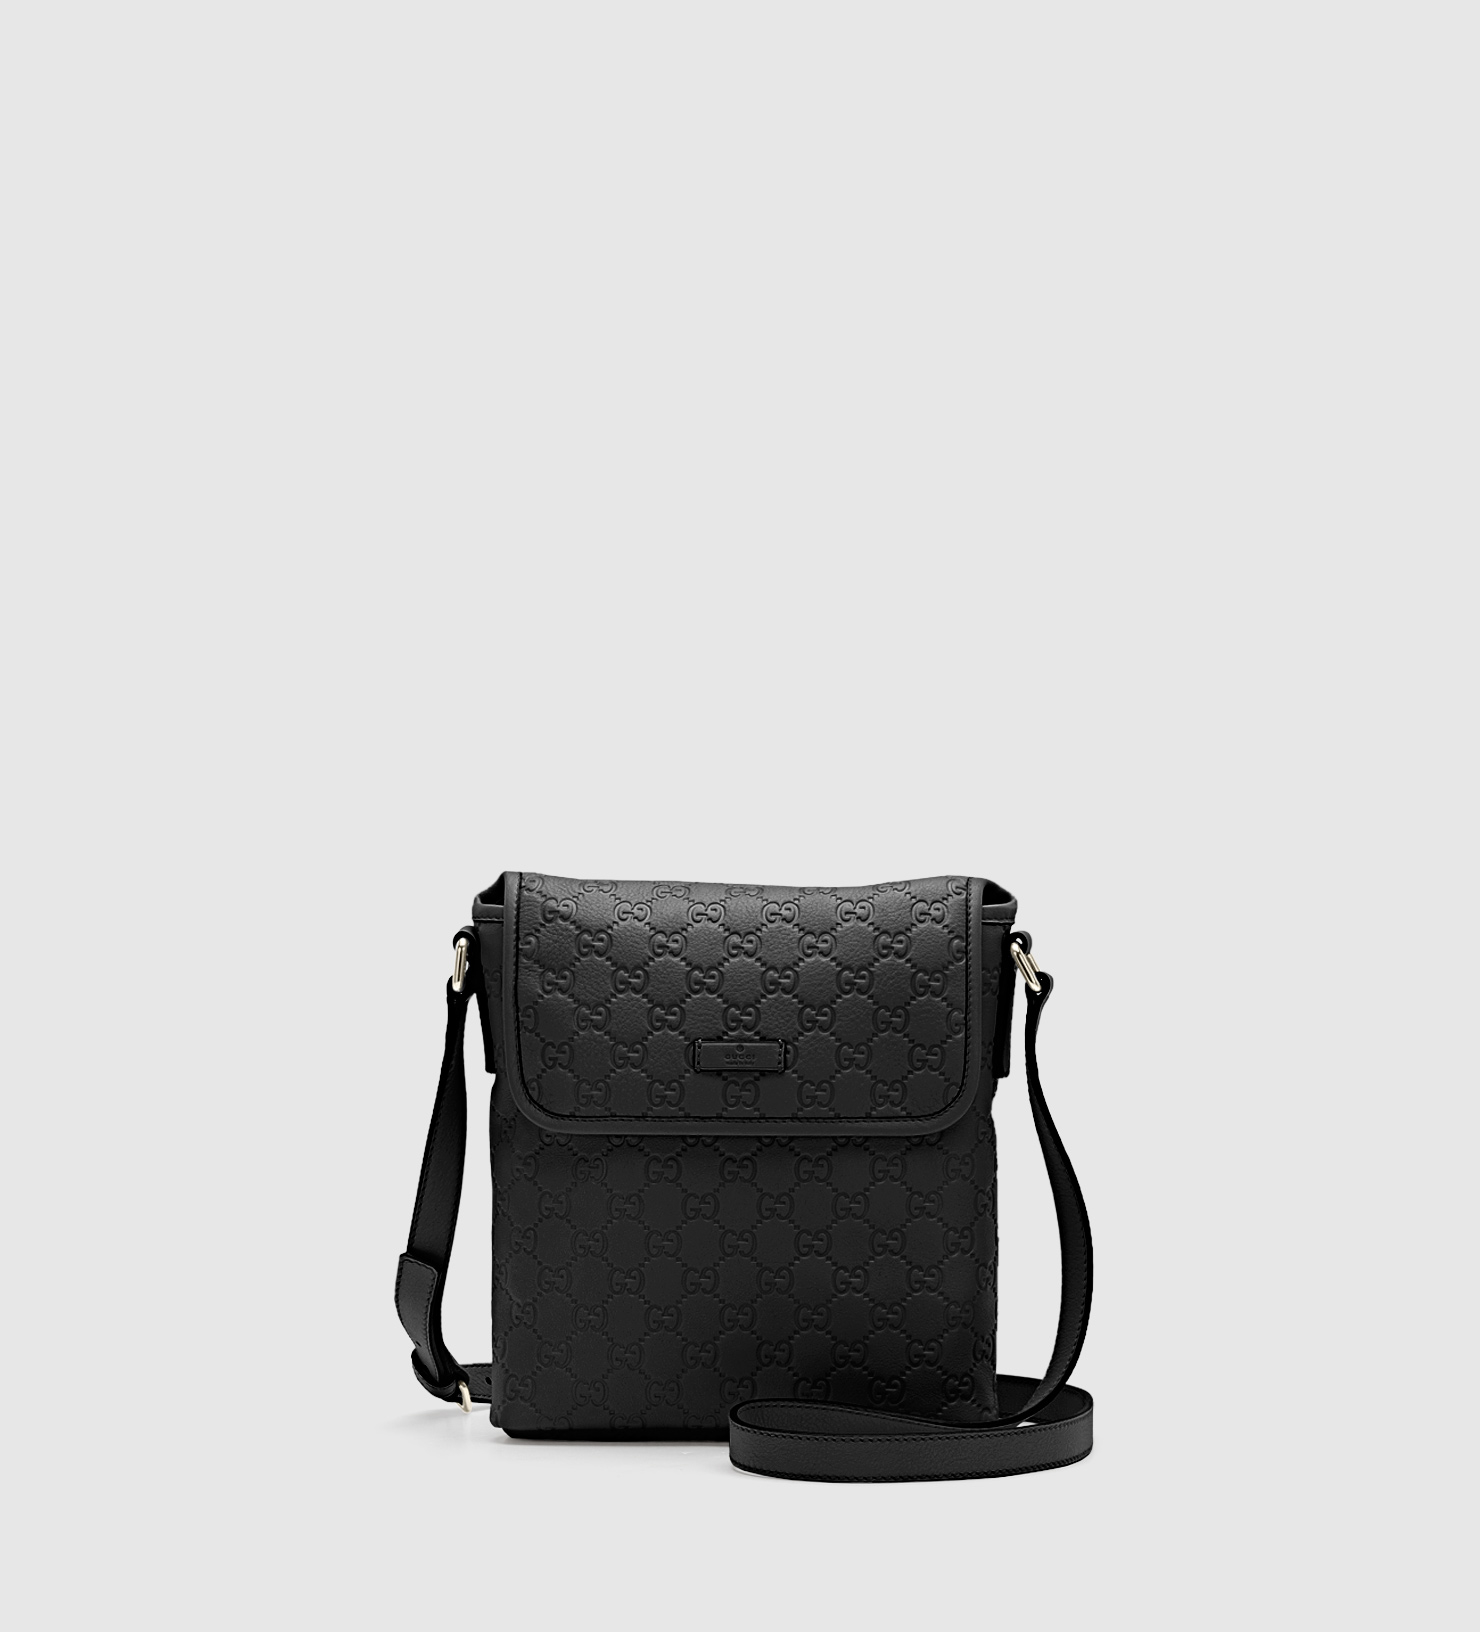 Lyst - Gucci Black Ssima Leather Messenger Bag in Black for Men